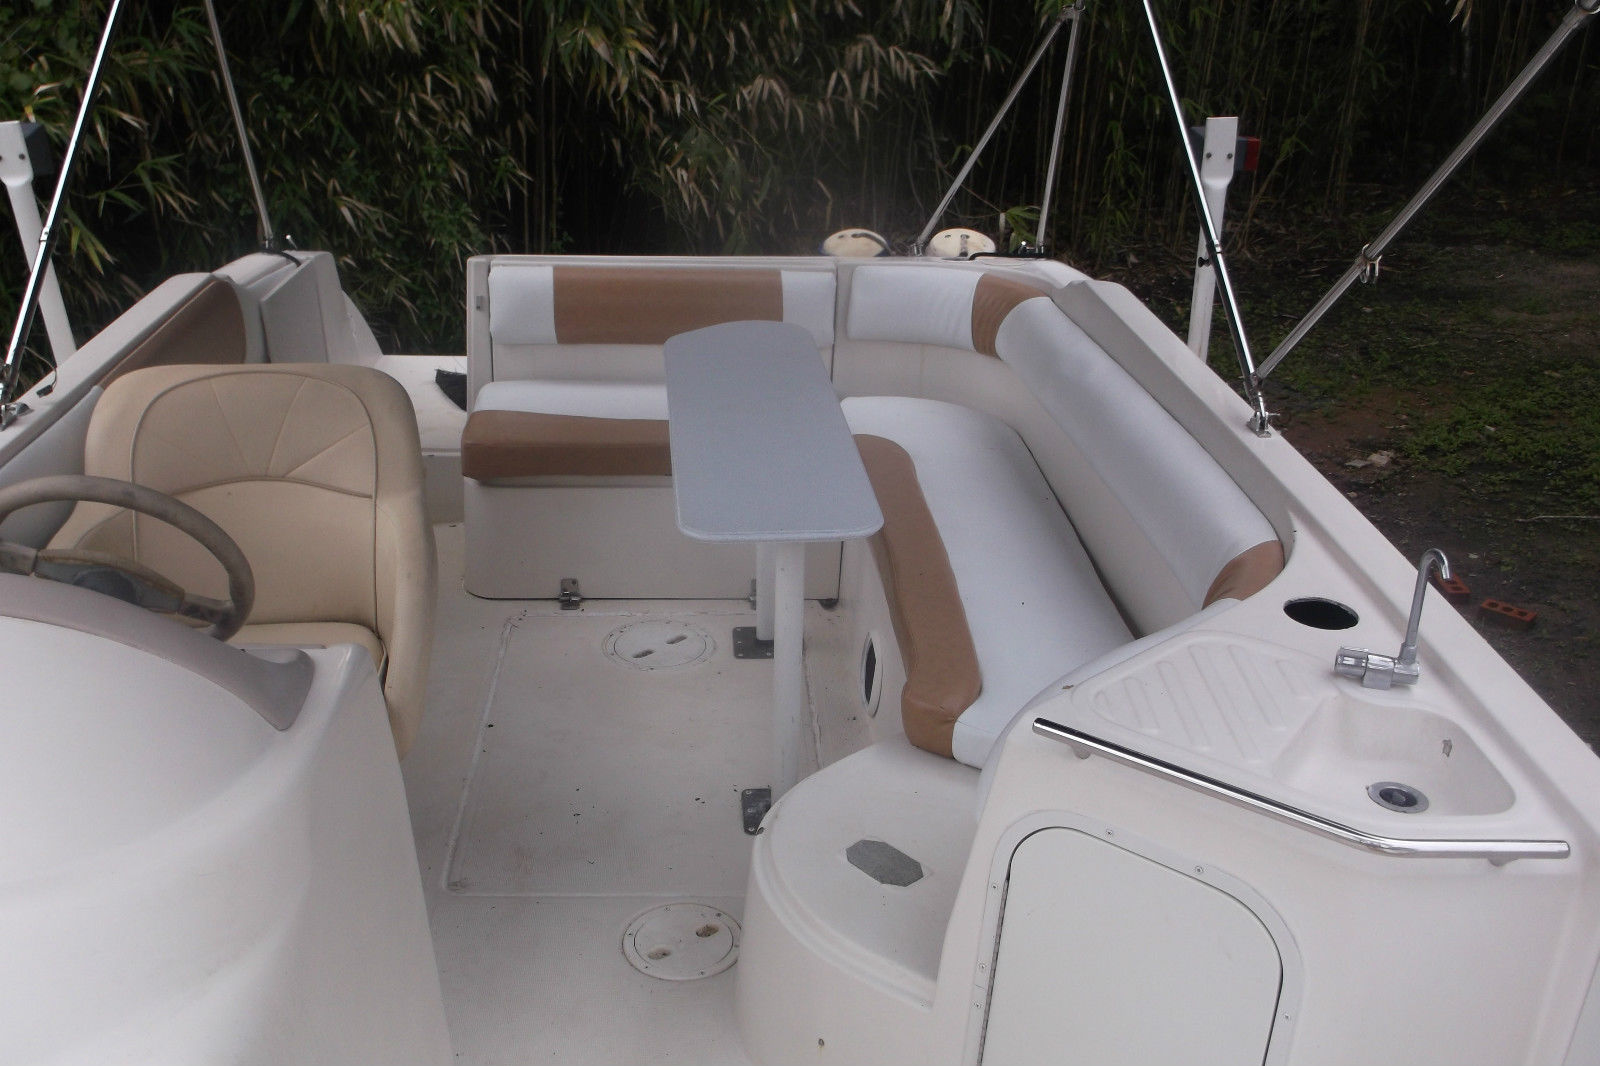 regal destiny 24.5 ft deck boat florida beauty! for sale